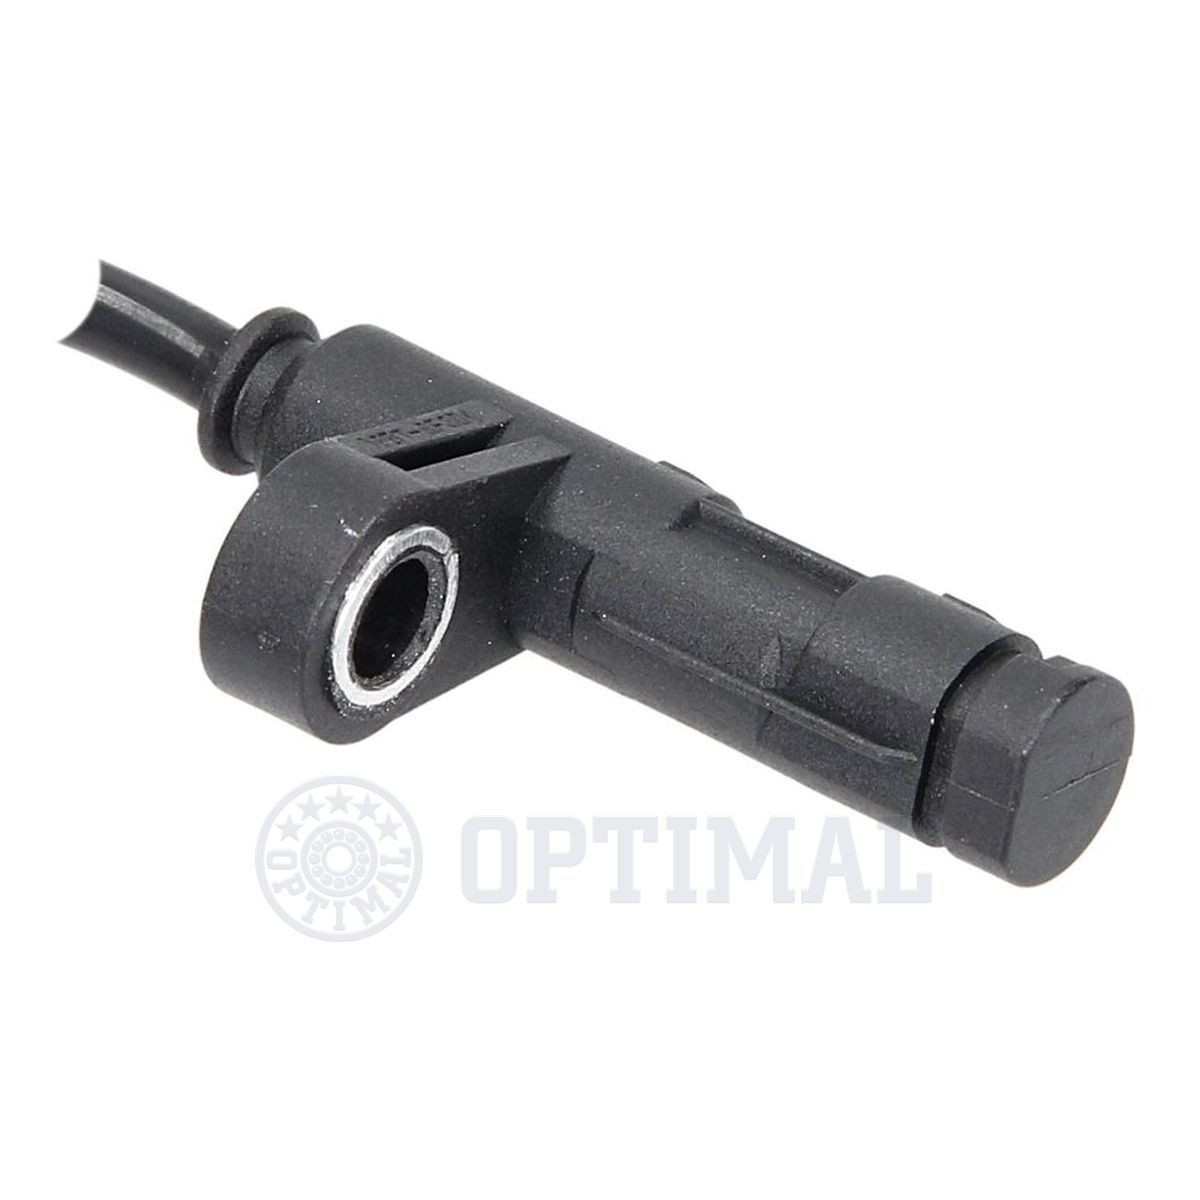 06S136 Anti lock brake sensor OPTIMAL 06-S136 review and test